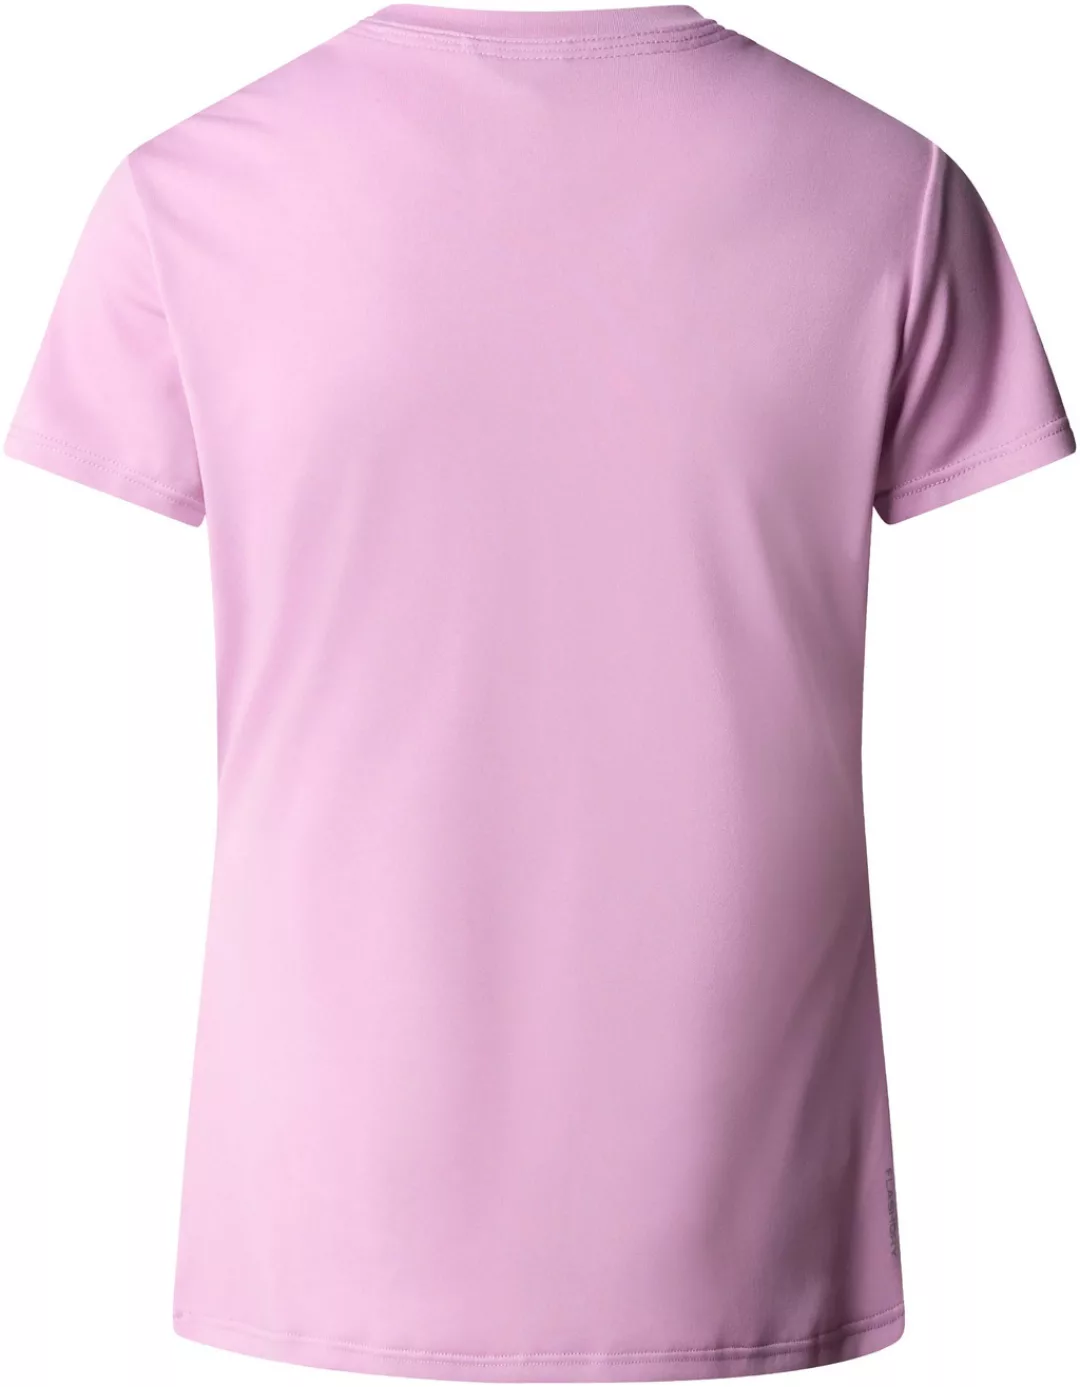 The North Face T-Shirt W REAXION AMP CREW - EU günstig online kaufen